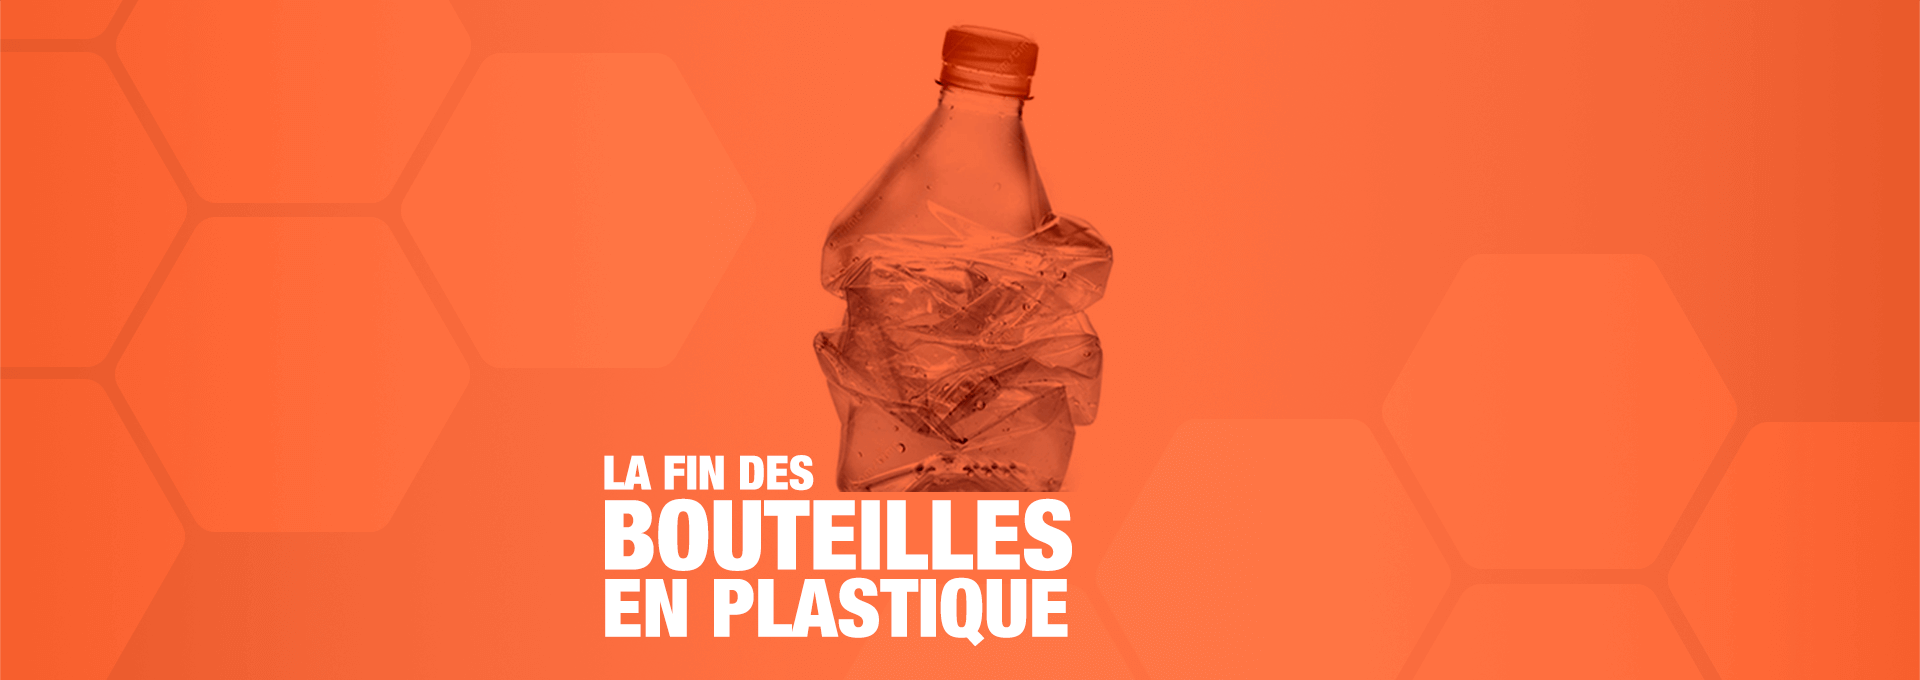 consommer autrement fin des bouteilles d'eau en plastique